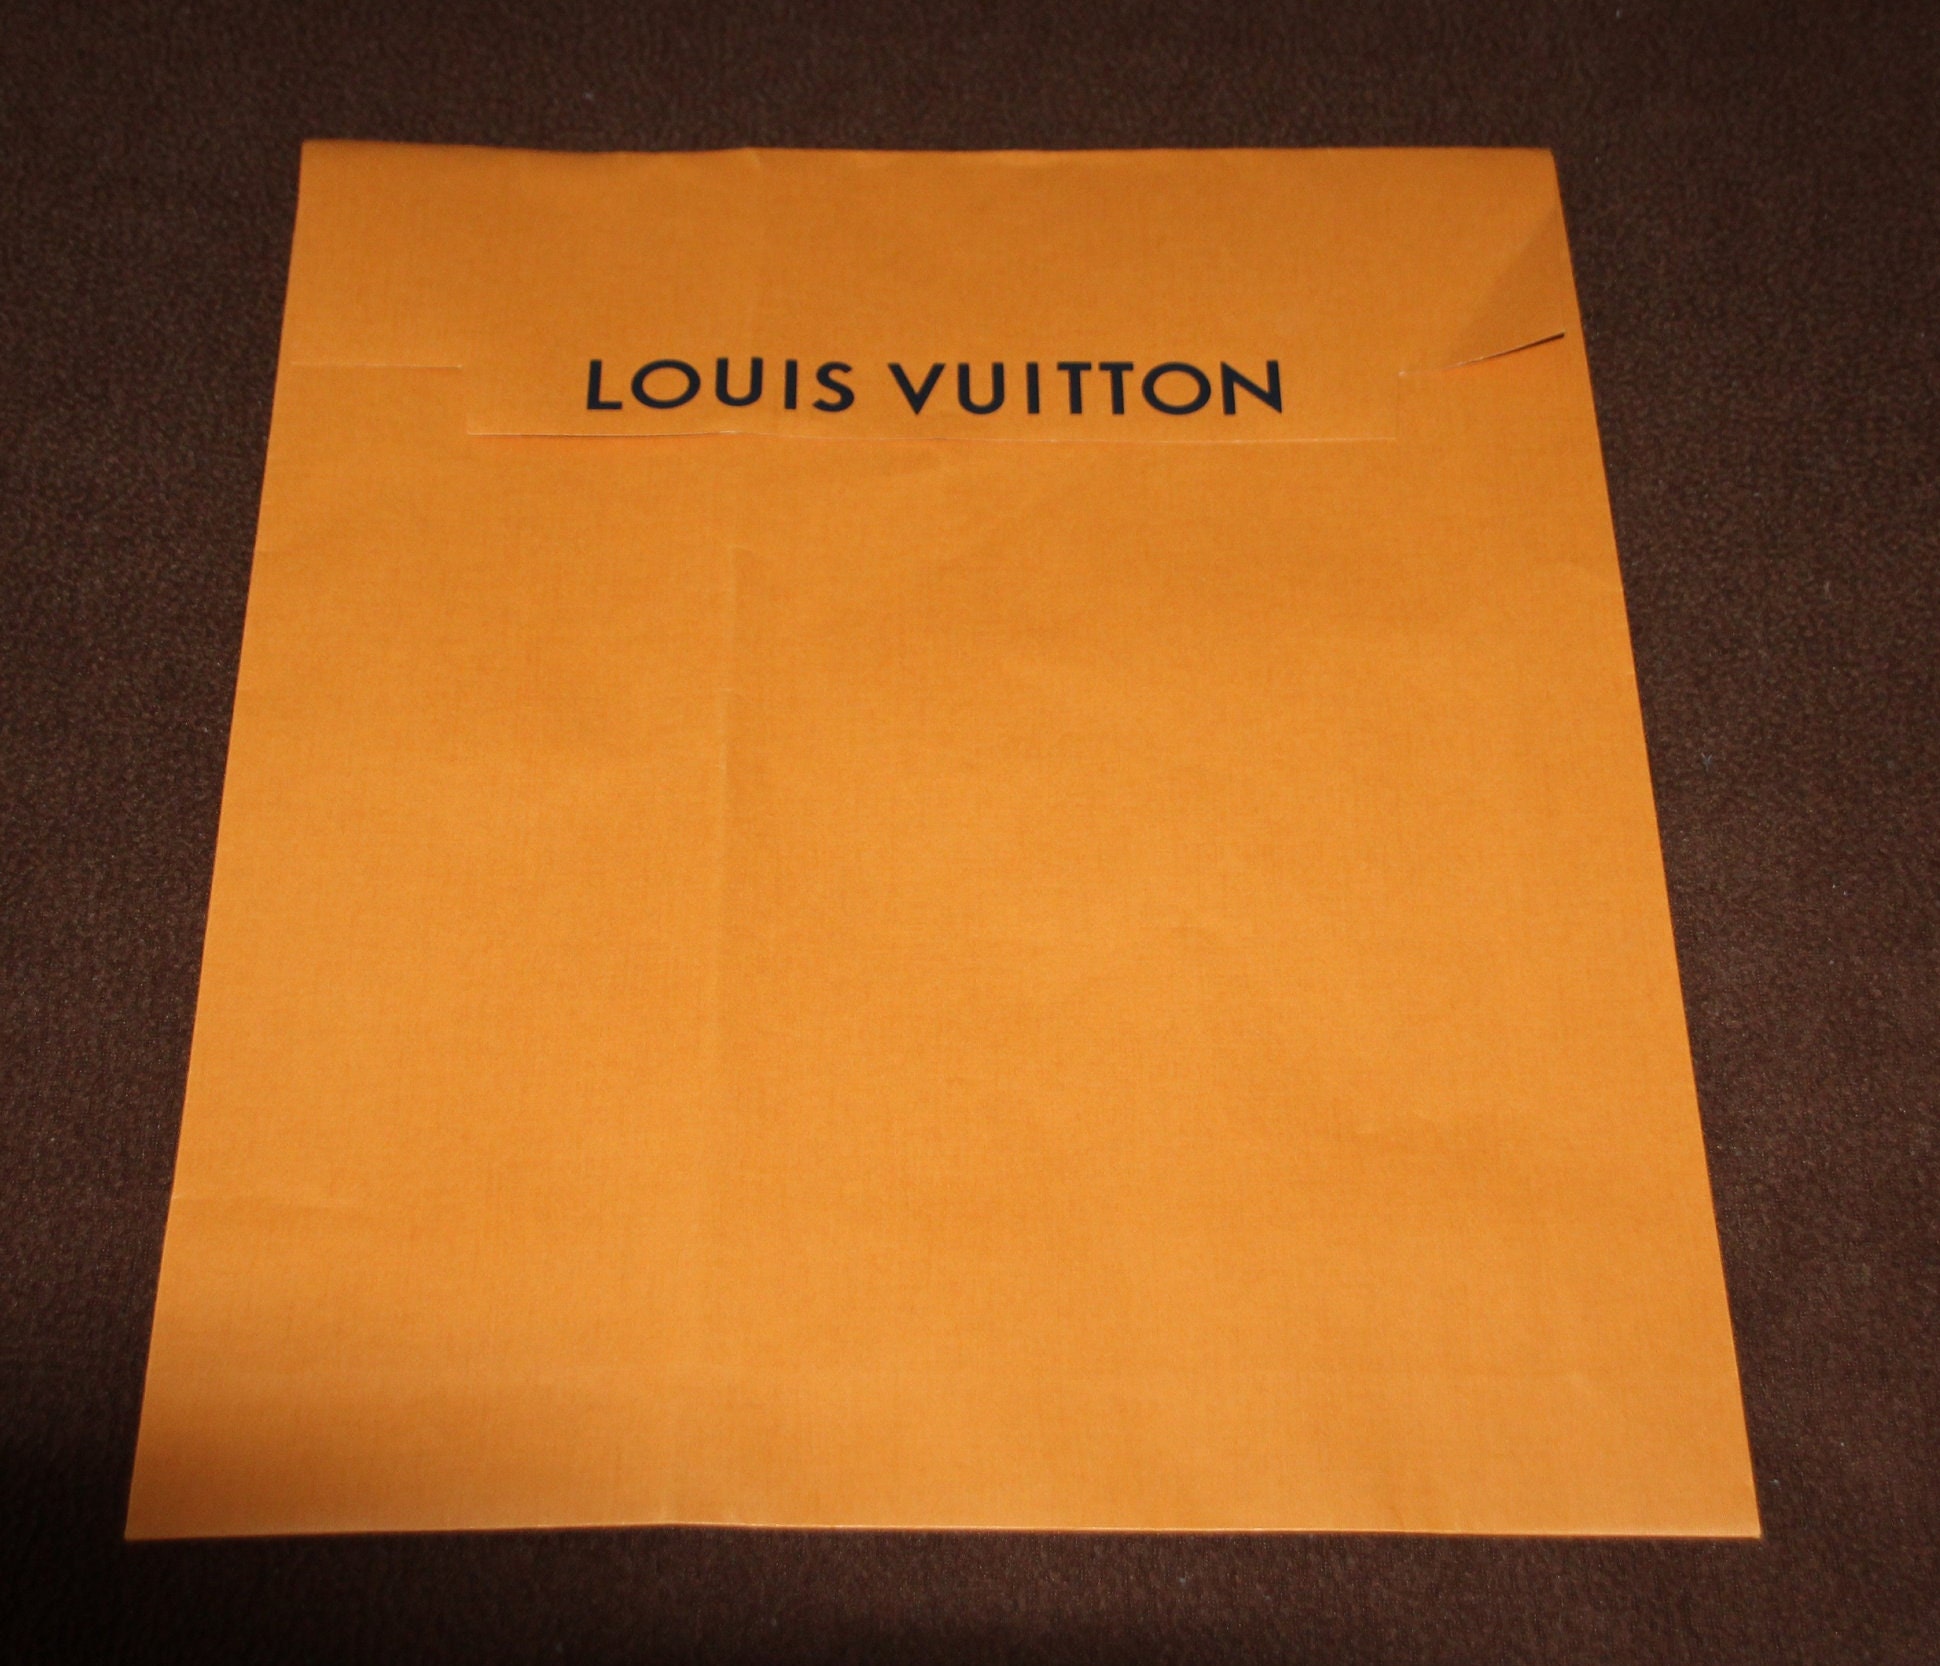 GomeBuck Party GBP - Glamorous Louis Vuitton Birthday Theme